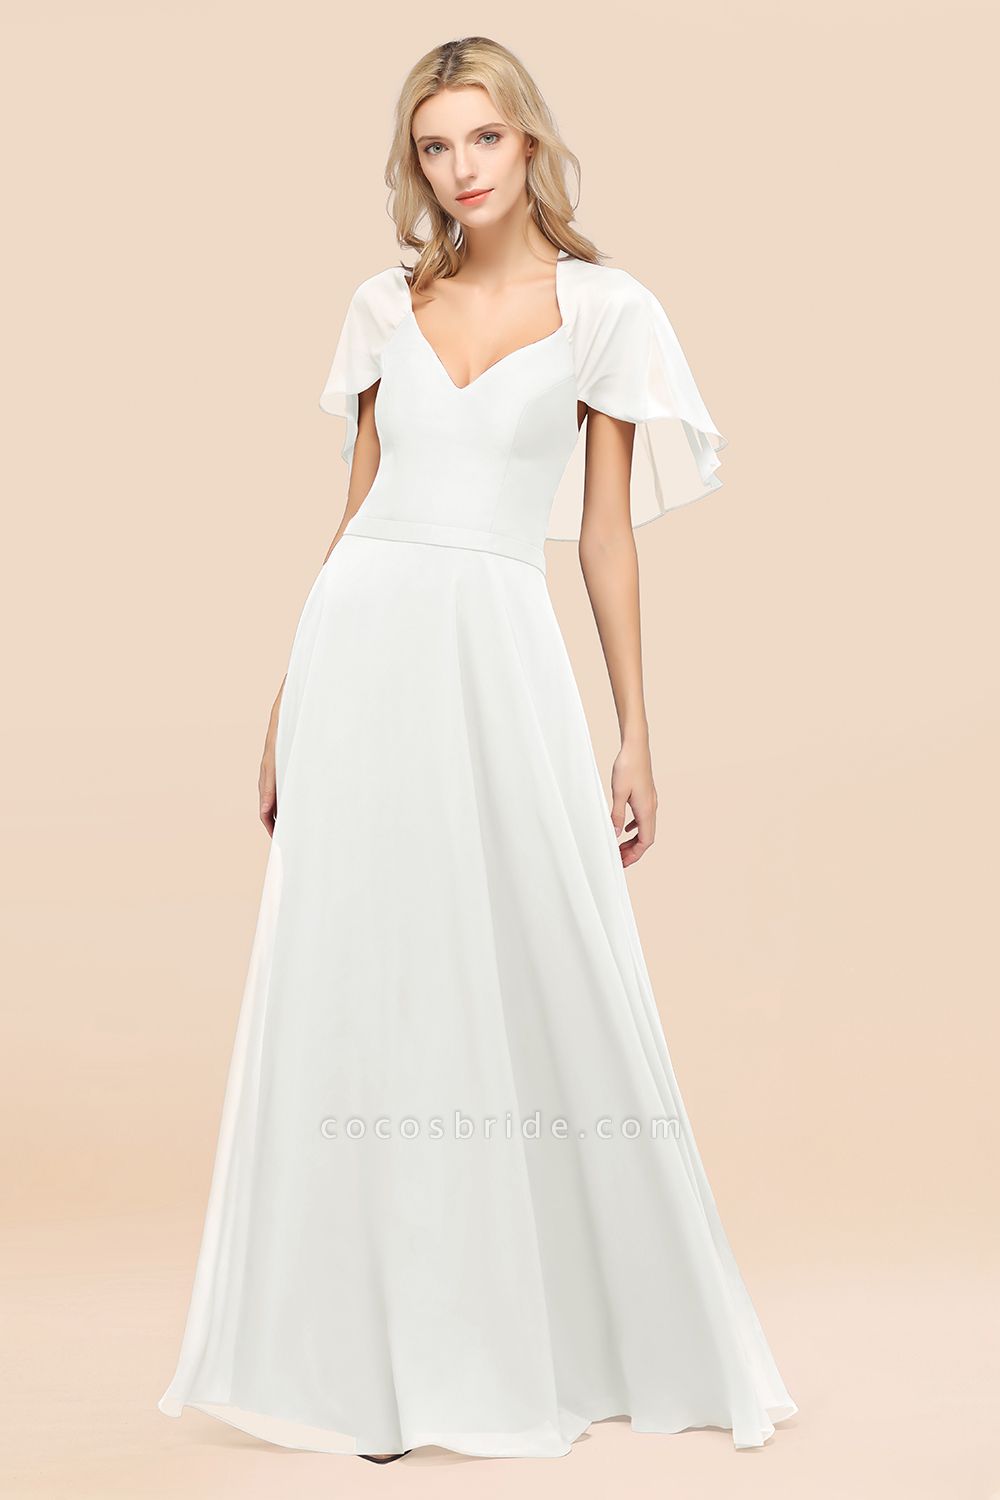 A-Line aus Chiffon, Satin mit V-Ausschnitt, kurzen Ärmeln, bodenlangen Kleid für Brautjungfer